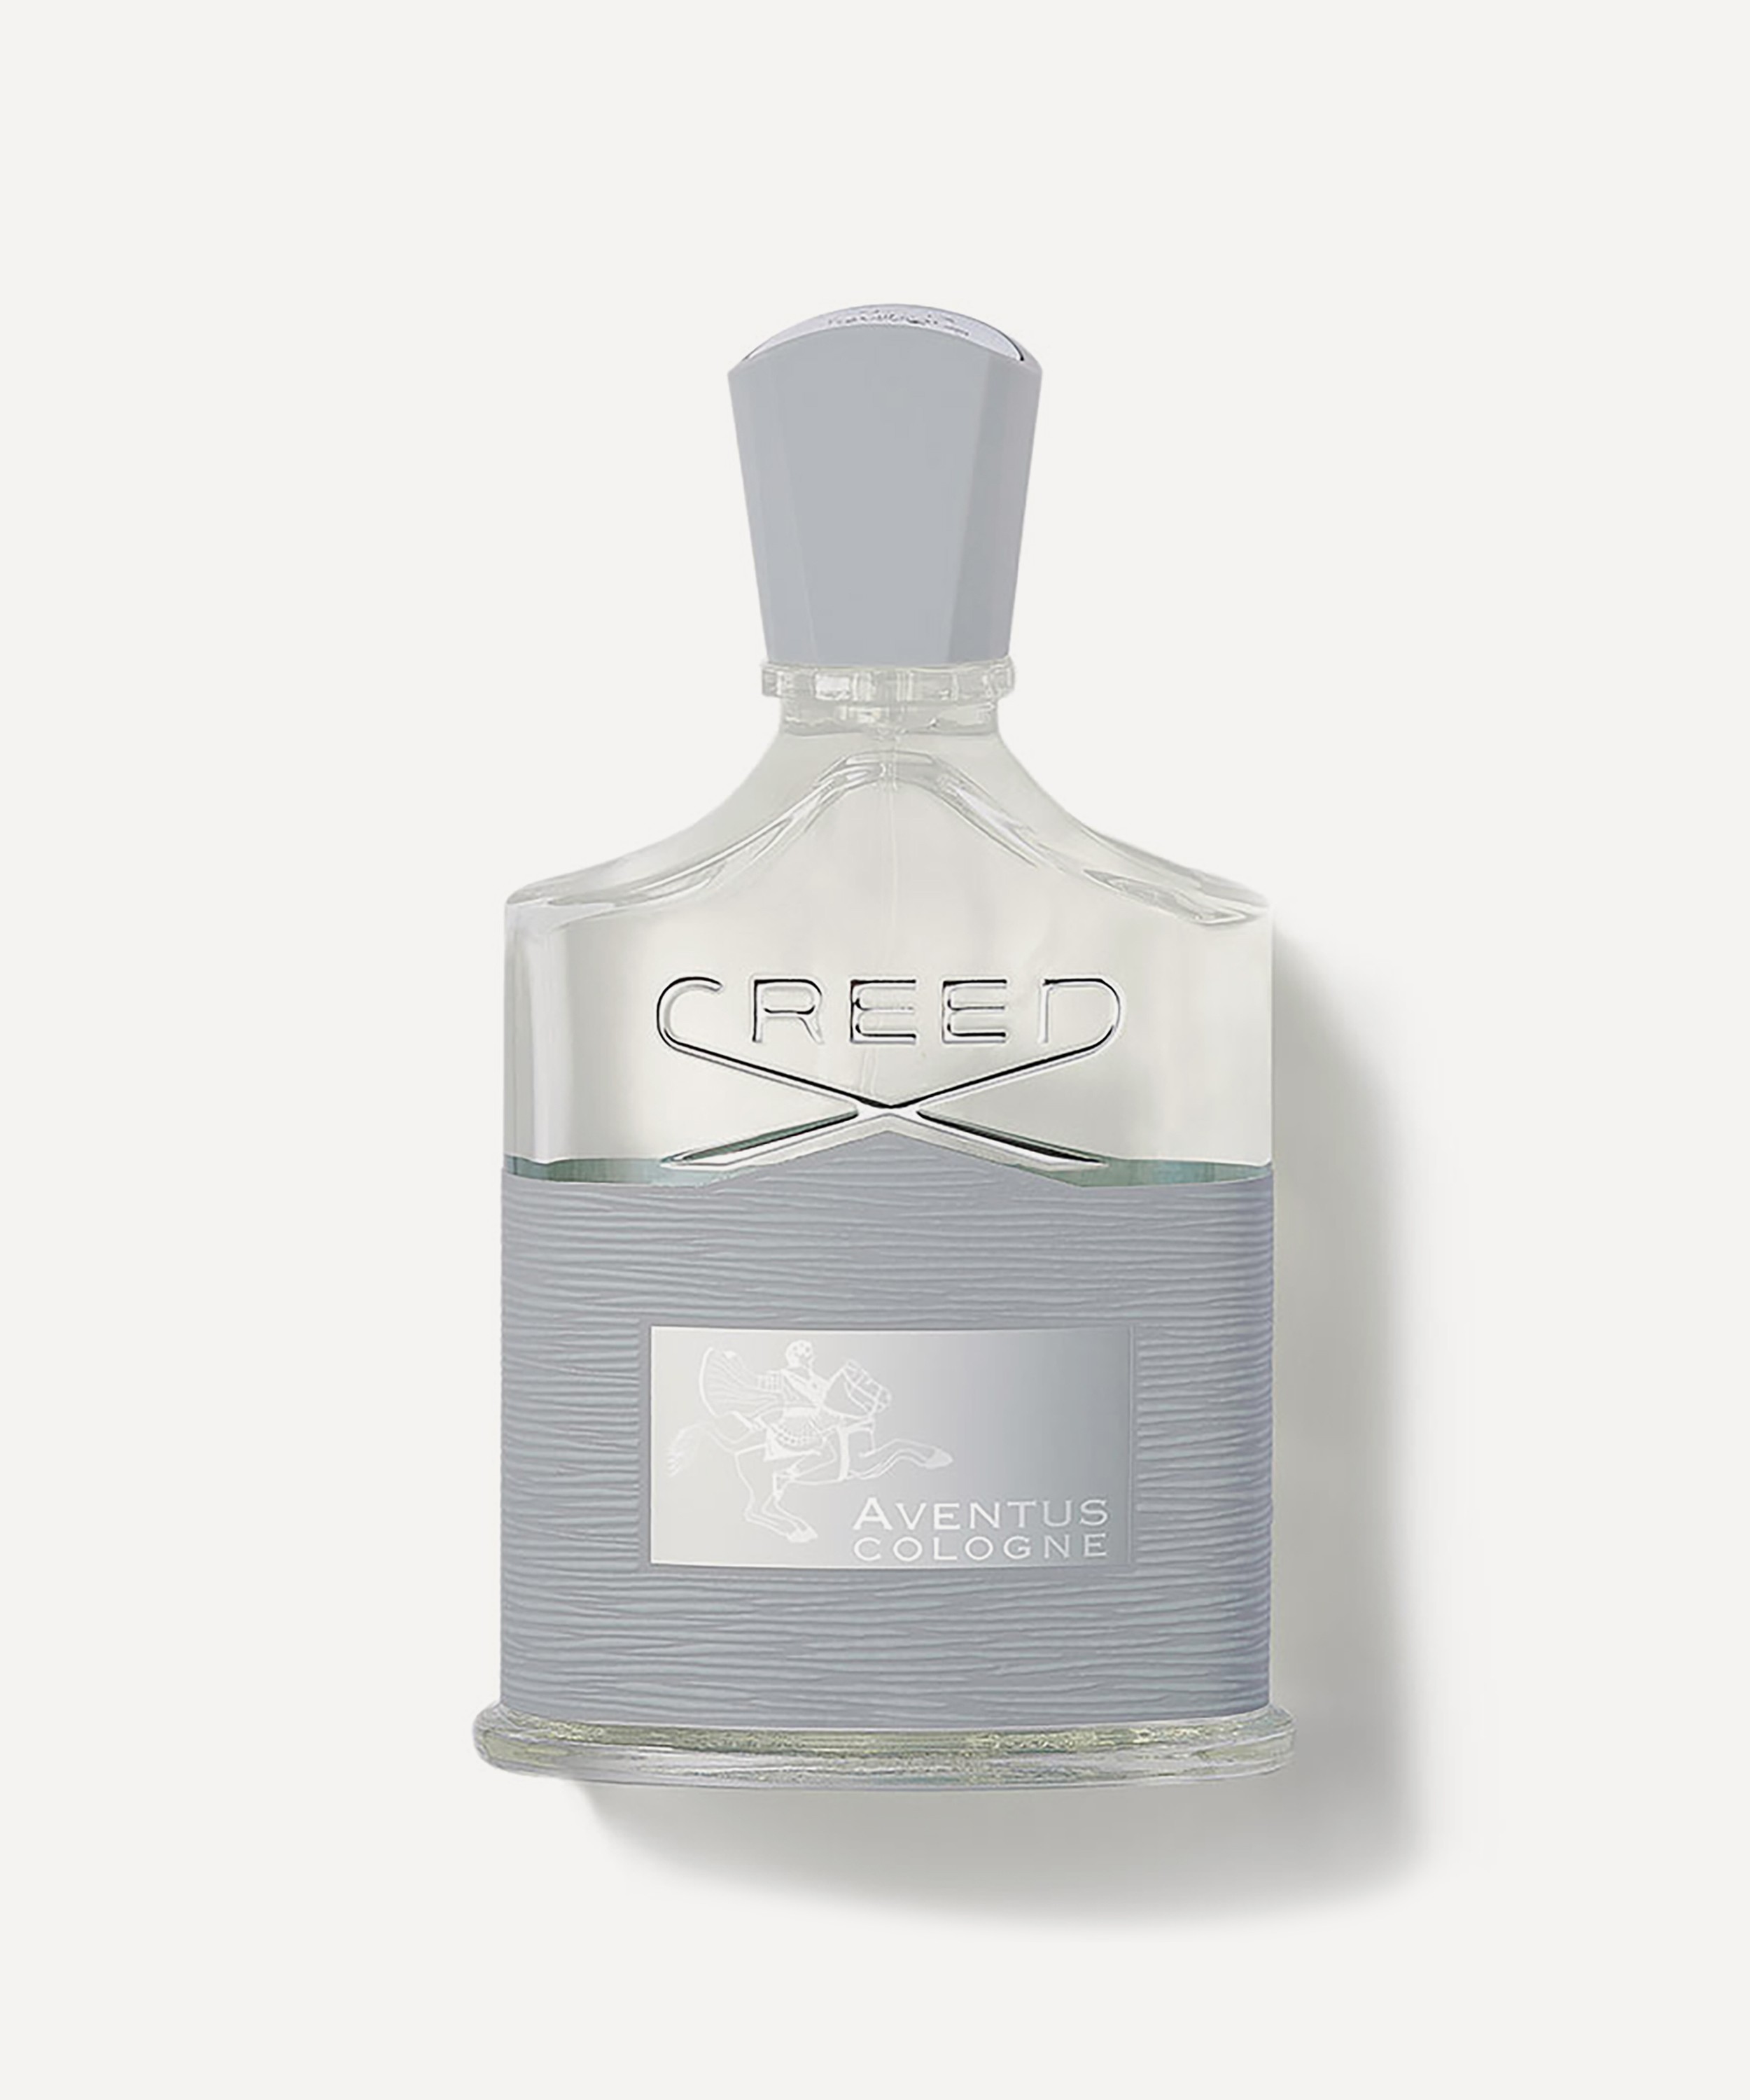 Creed - Aventus Cologne Eau de Parfum 50ml